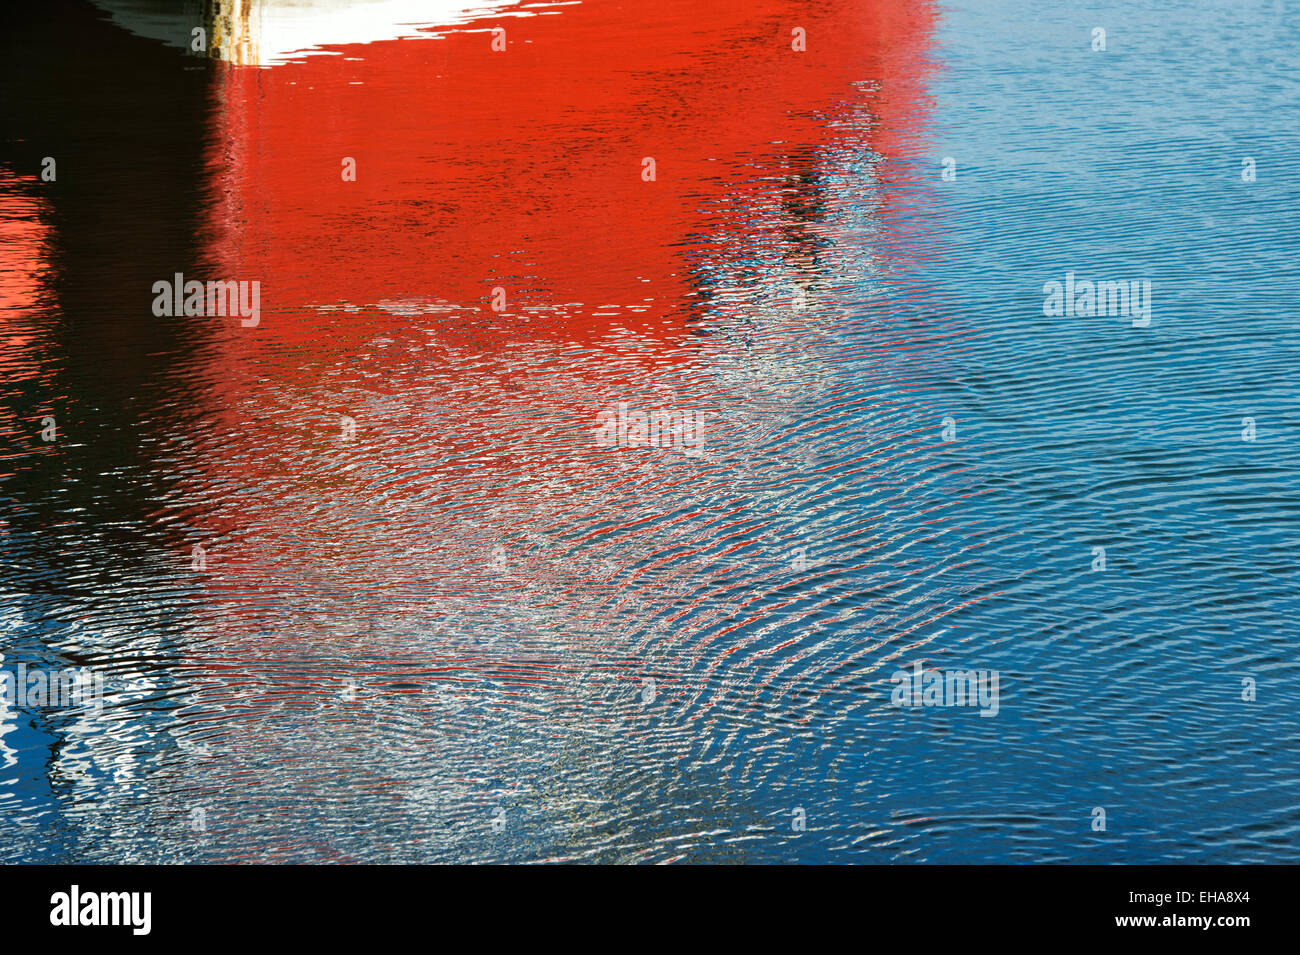 Coque de bateau de pêche rouge et de l'eau reflet à Eyemouth, Berwickshire, Scottish Borders, Scotland Banque D'Images